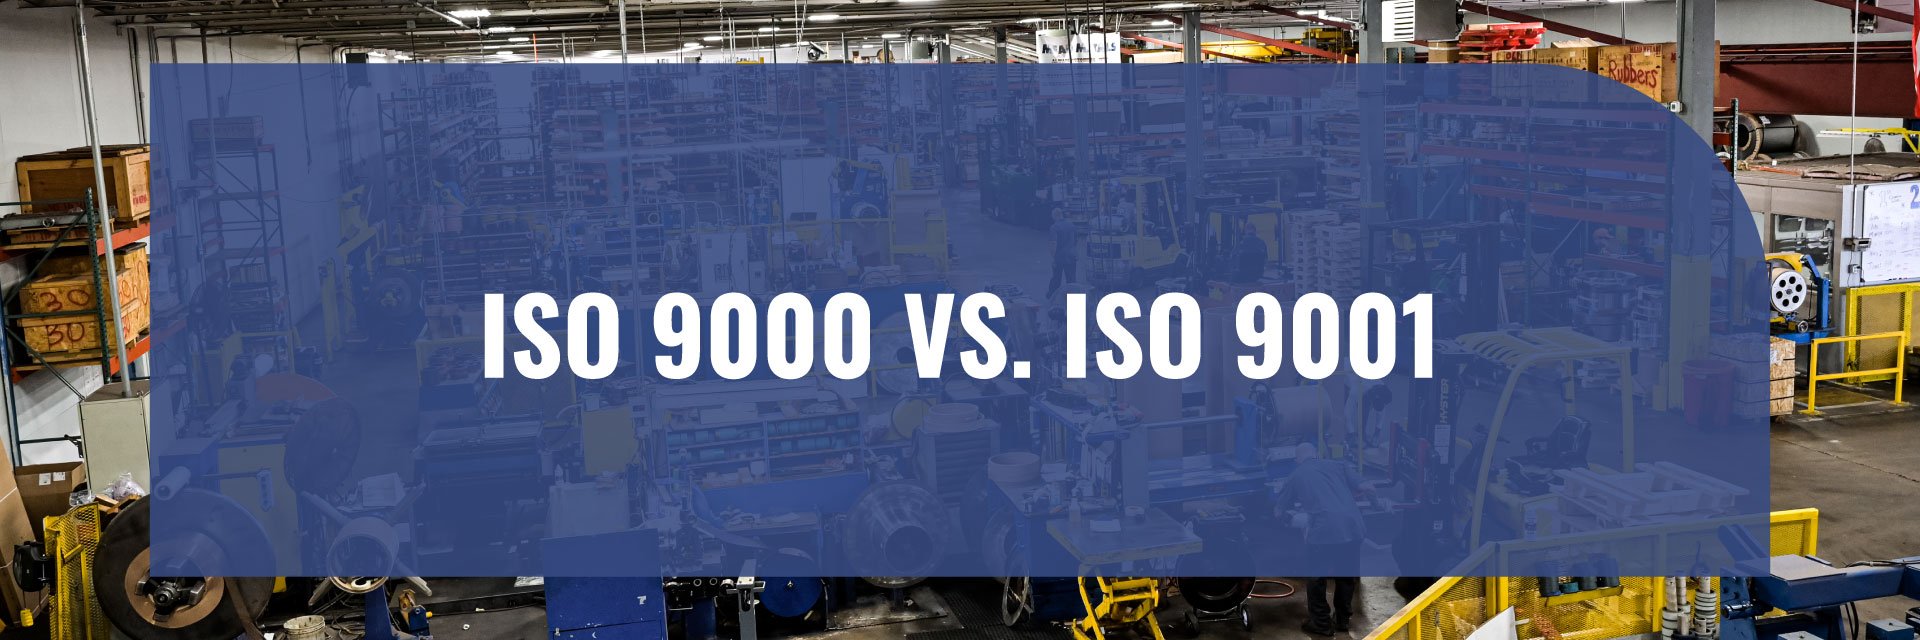 ISO Certified: ISO 9000 vs. ISO 9001